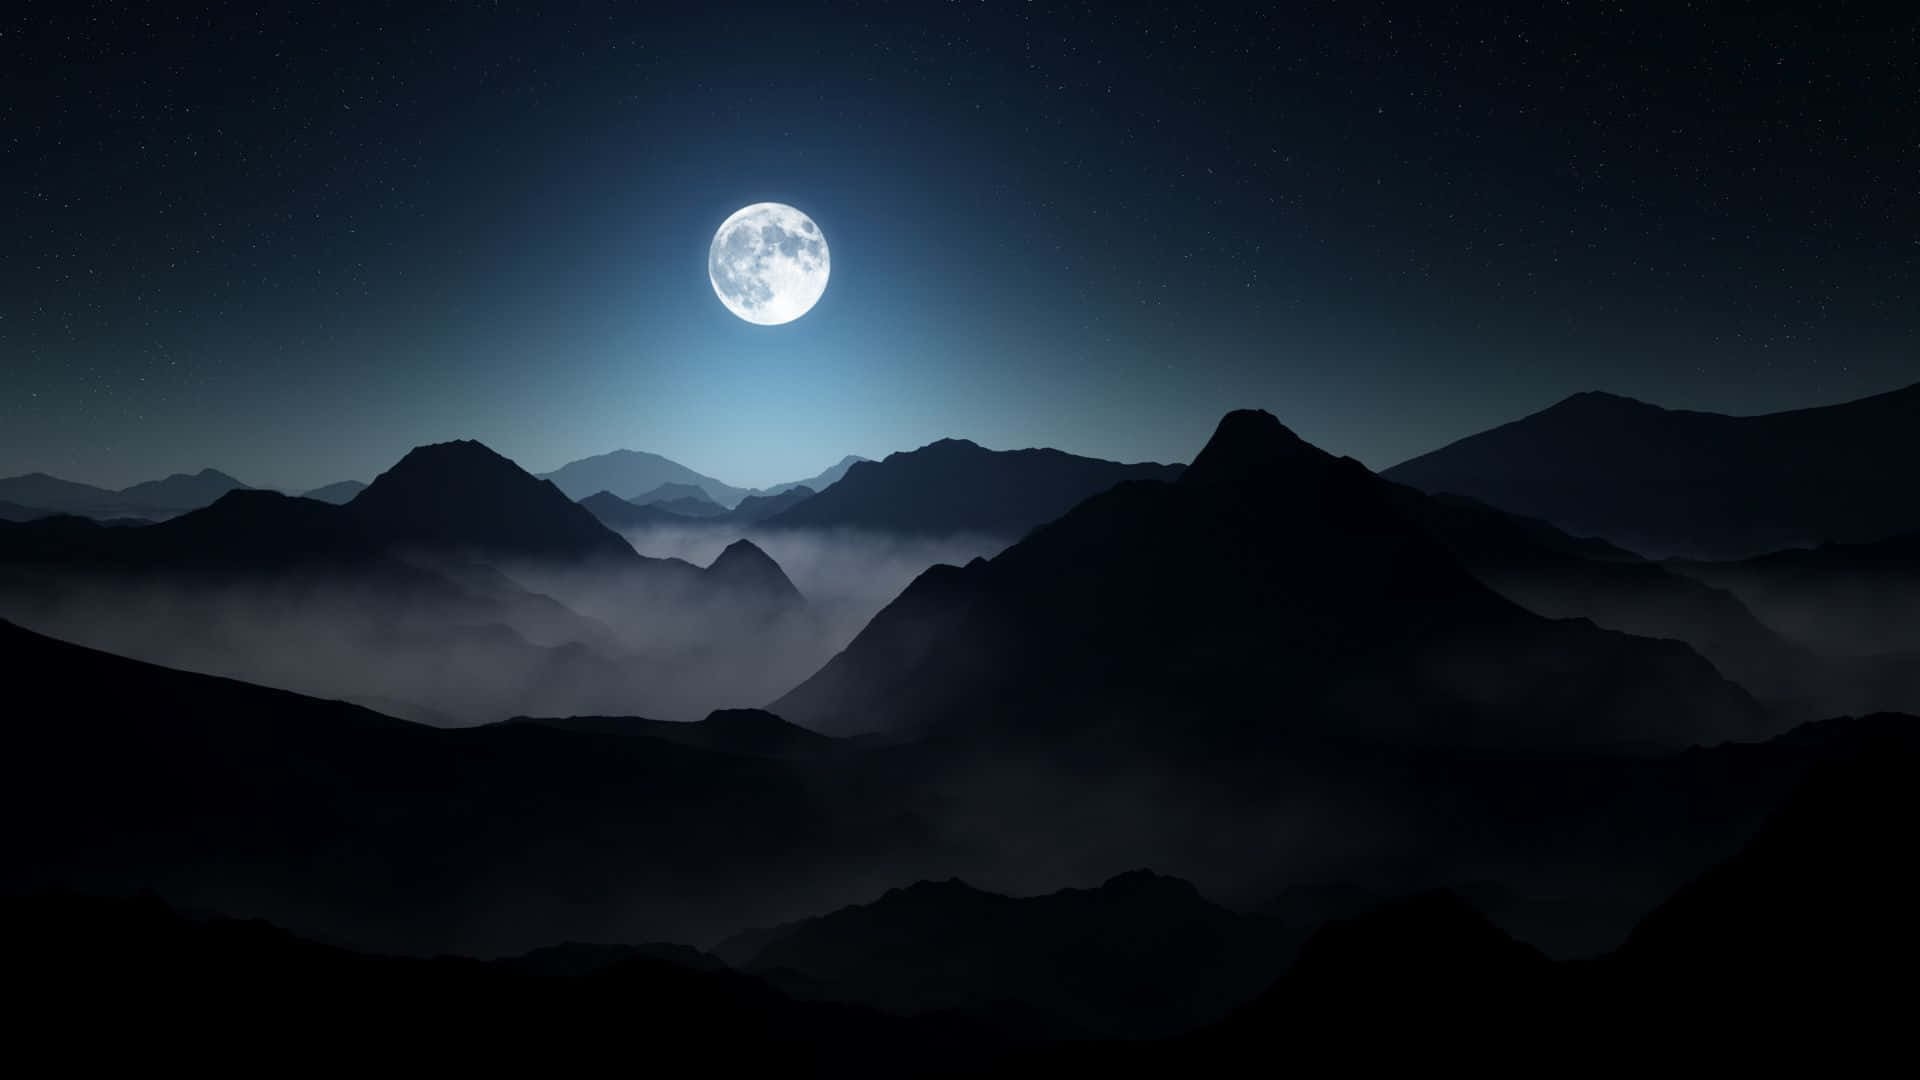 Captivating Dark Moon in a Starry Night Sky Wallpaper